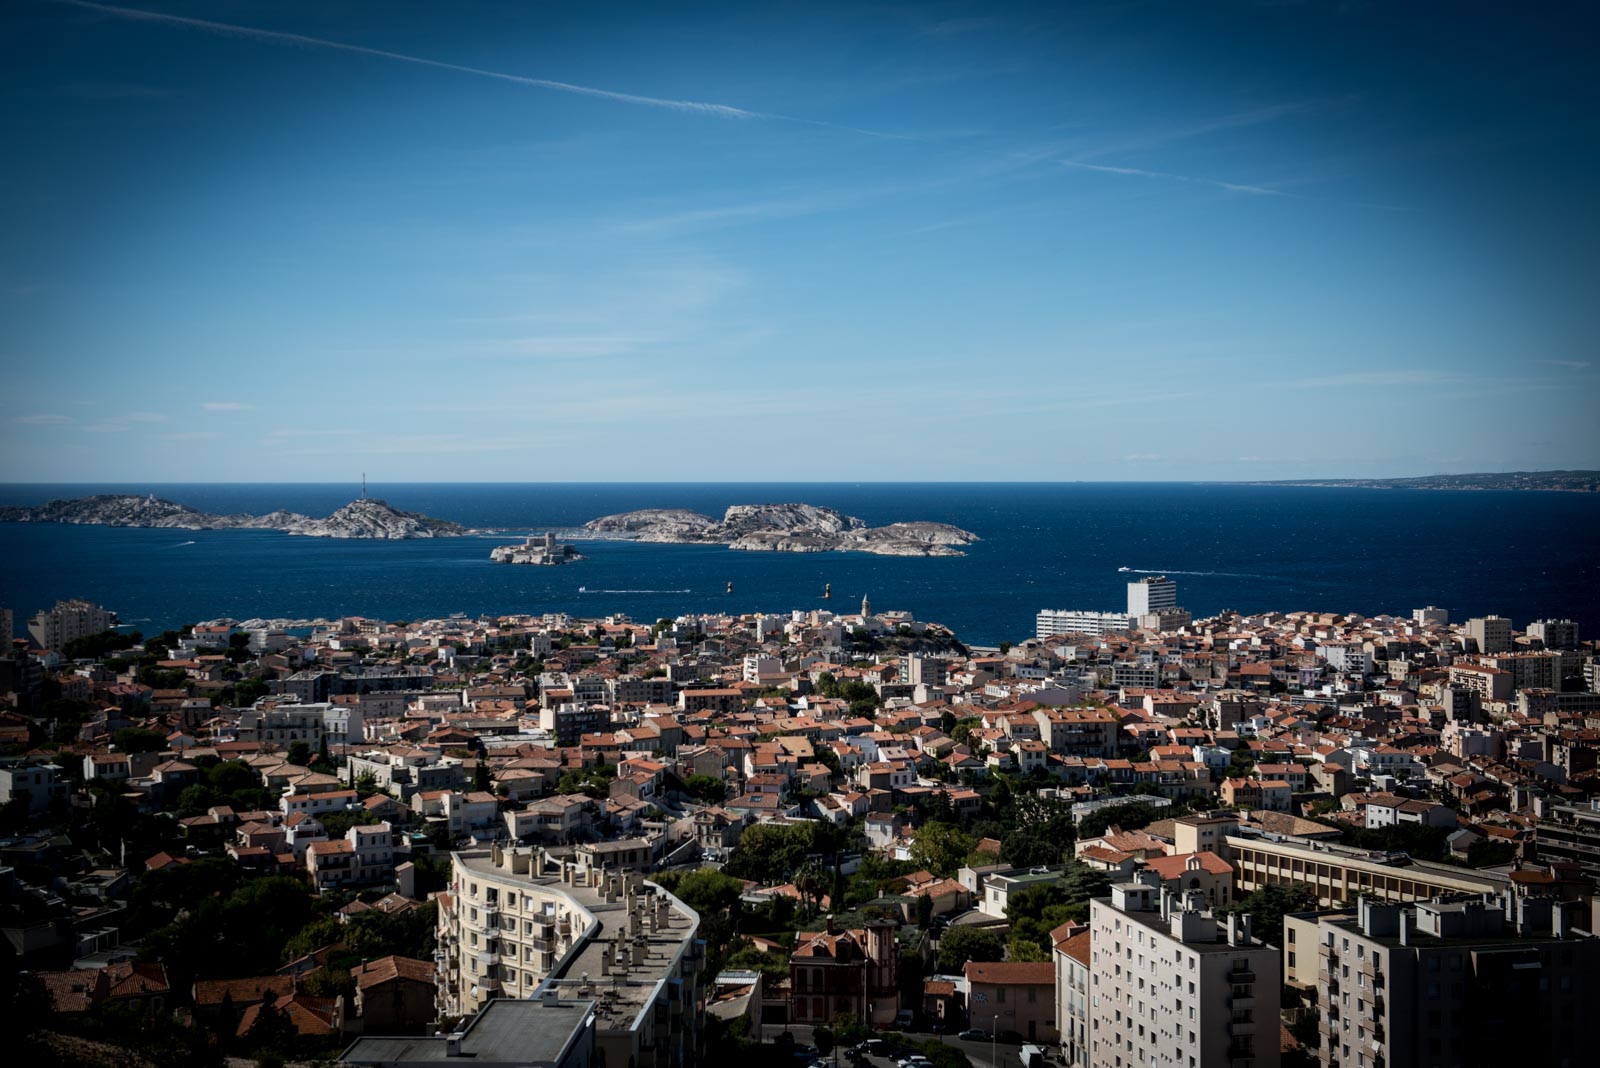 2021 09 28-29 - Marseille - sokebana - 045